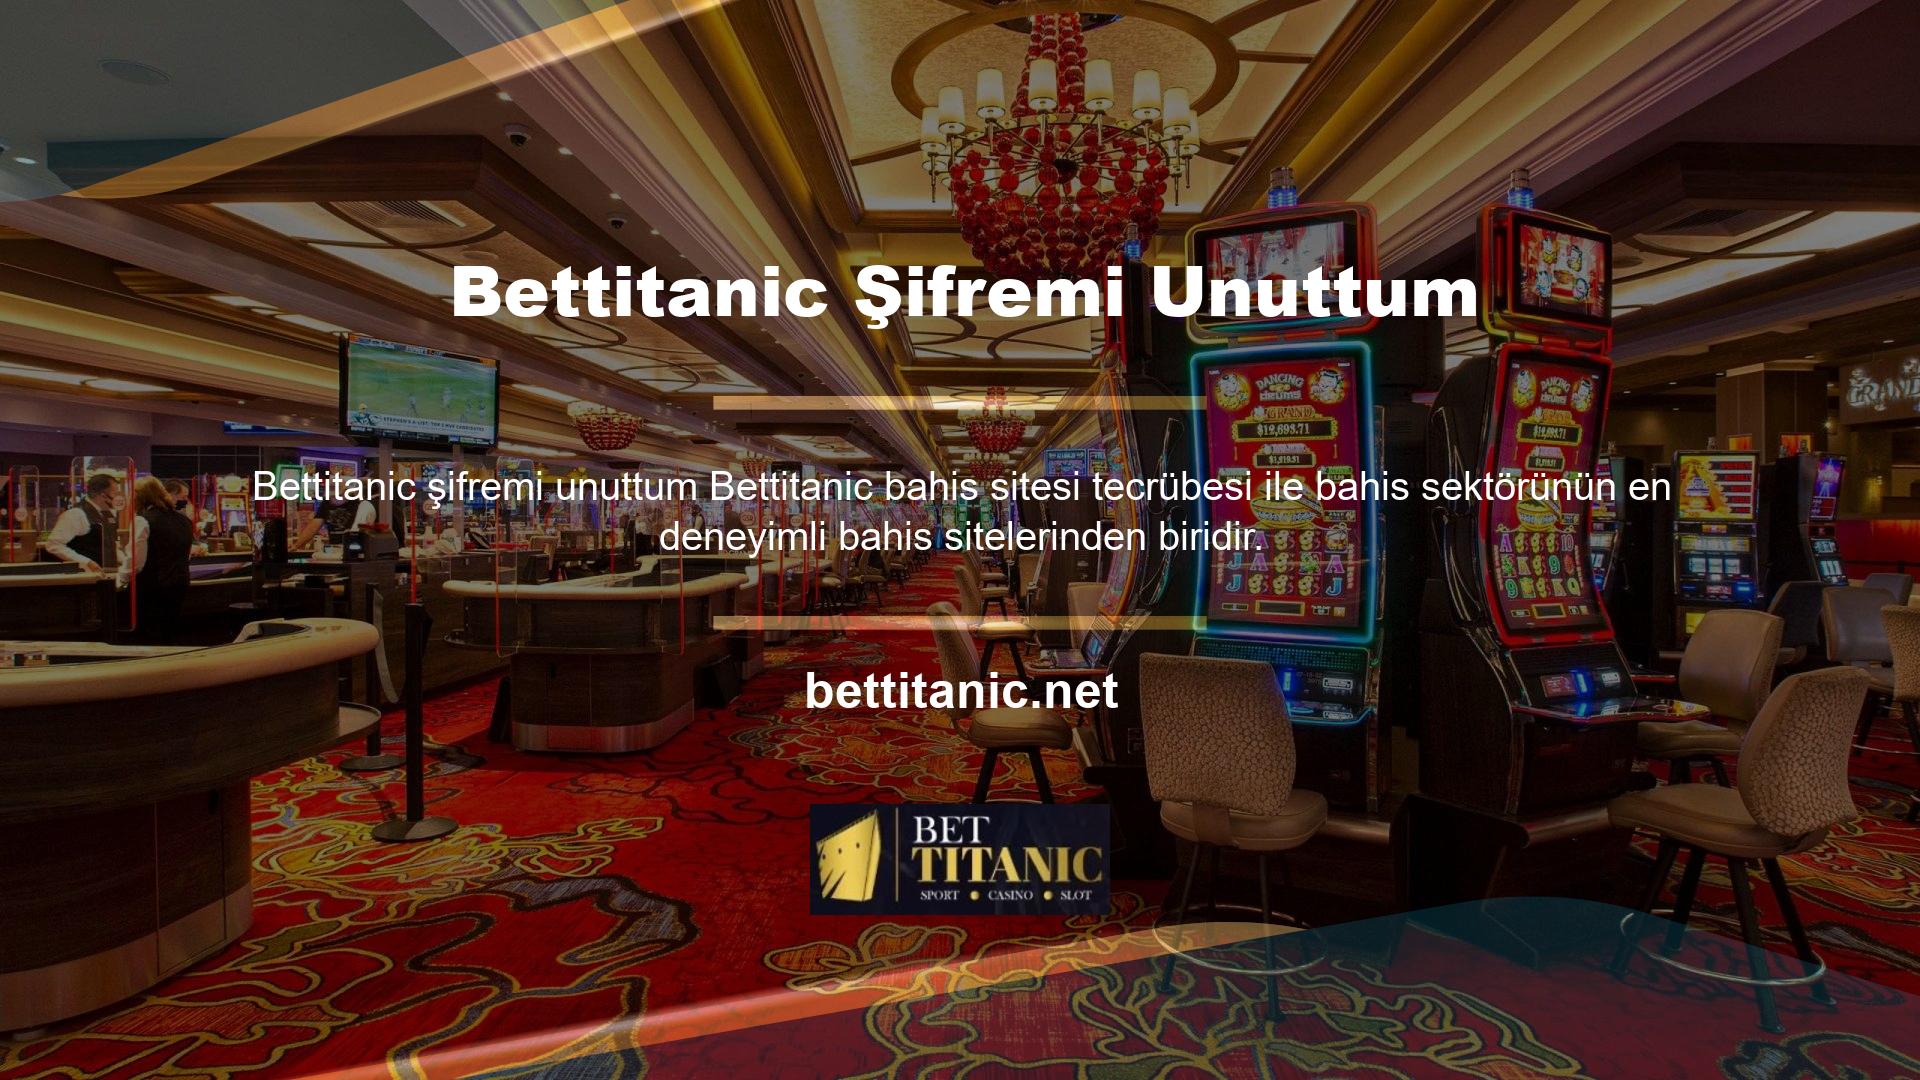 Bettitanic firma olarak kaliteli bir bahis deneyimi ile oyunculara olumlu bir deneyim sunmaktadır